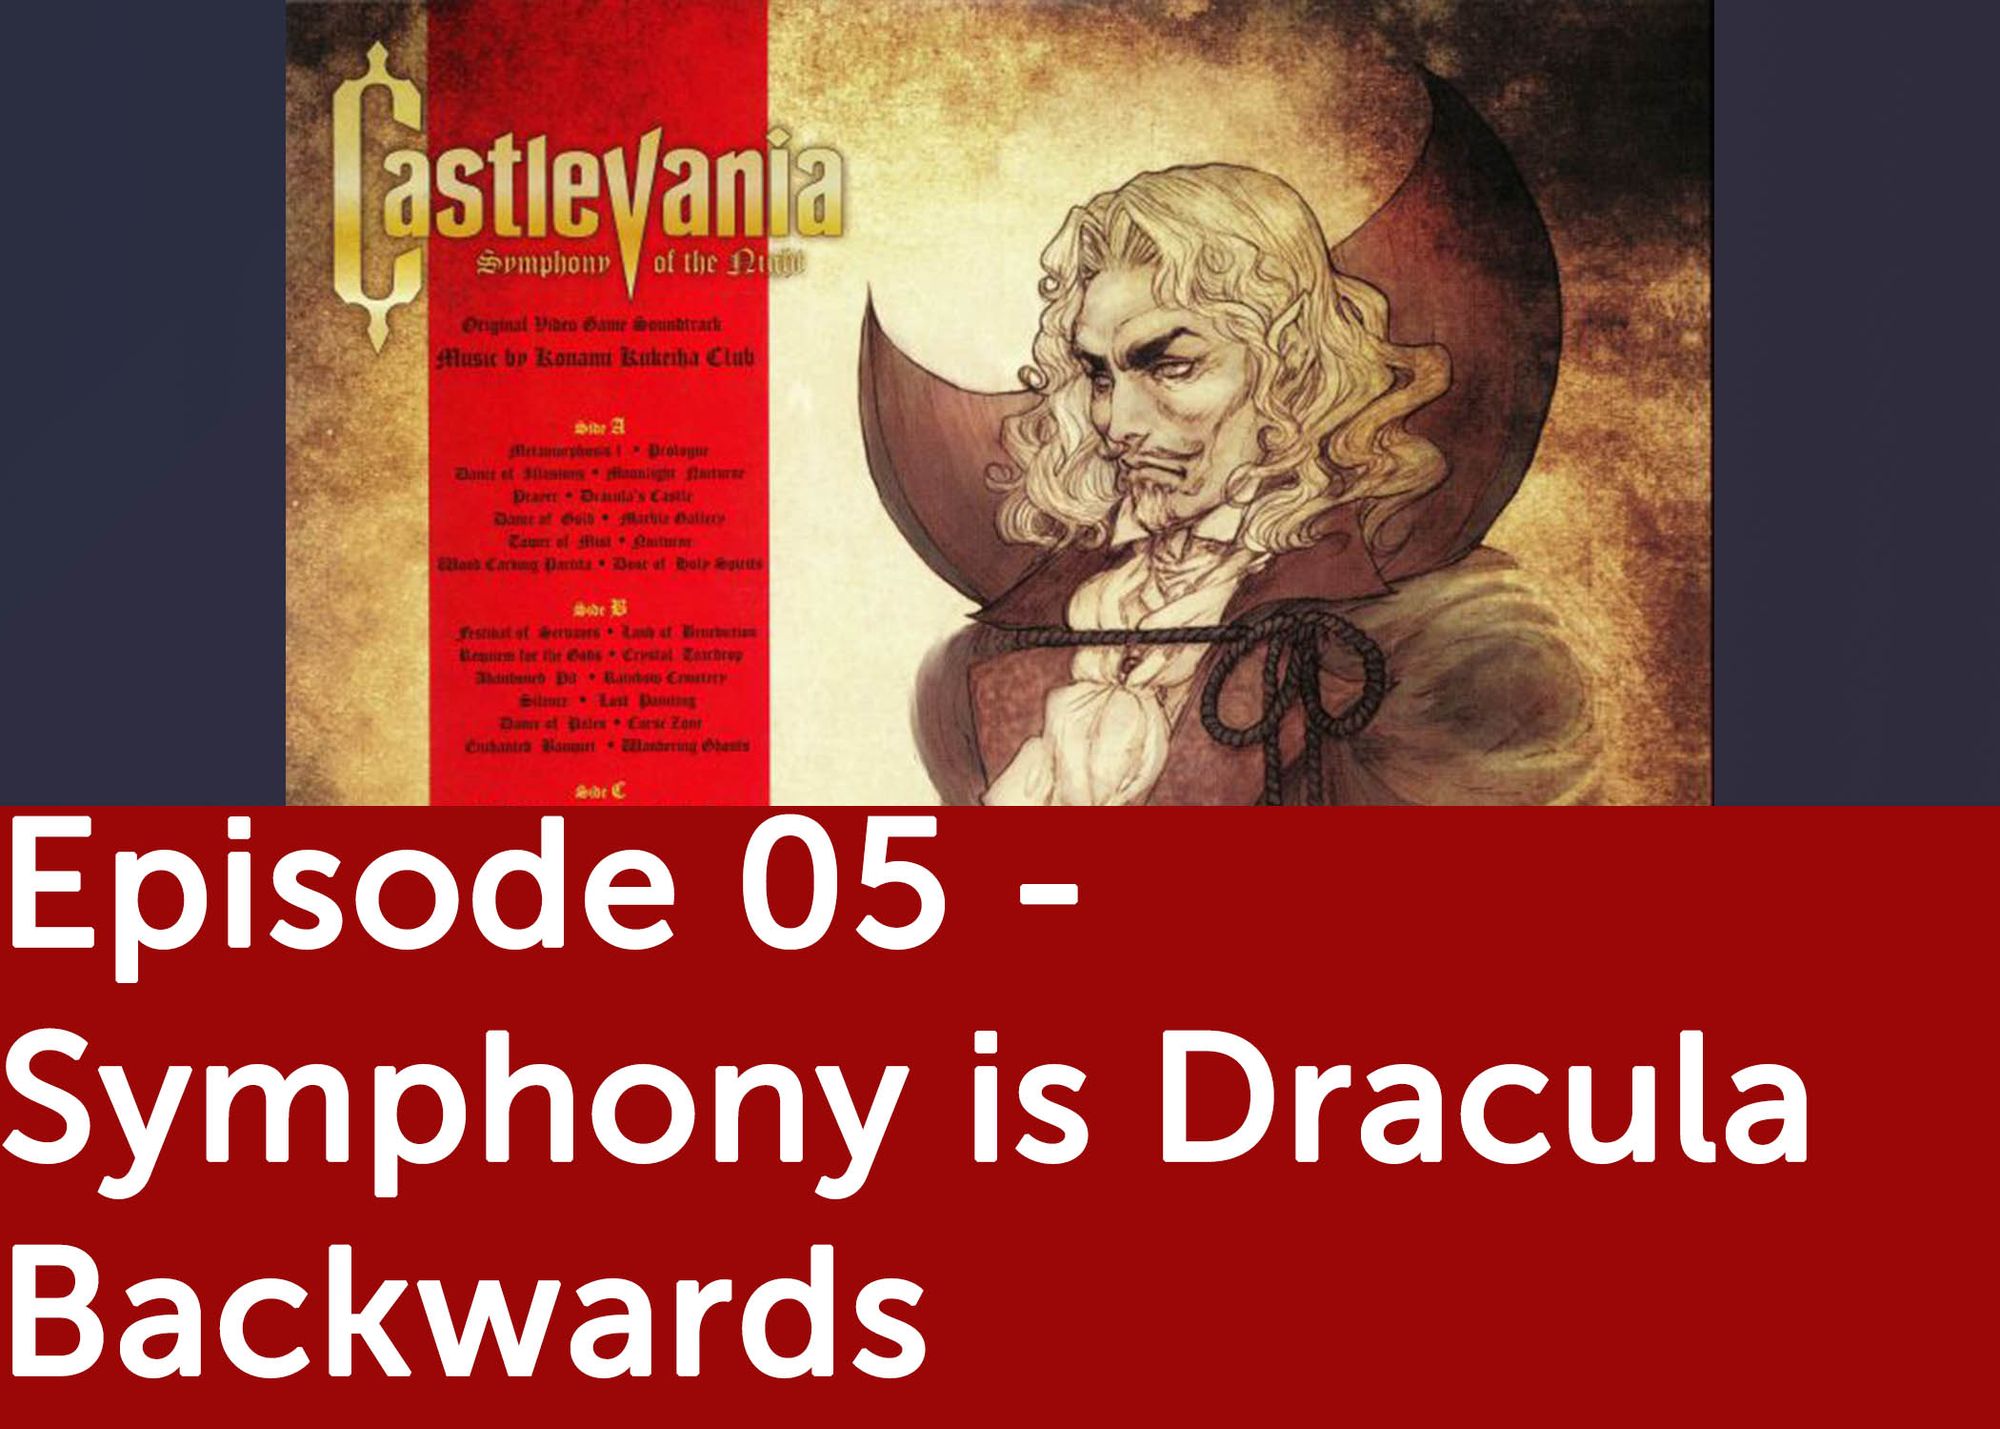 Episode 05 - Symphony is Dracula Backwards